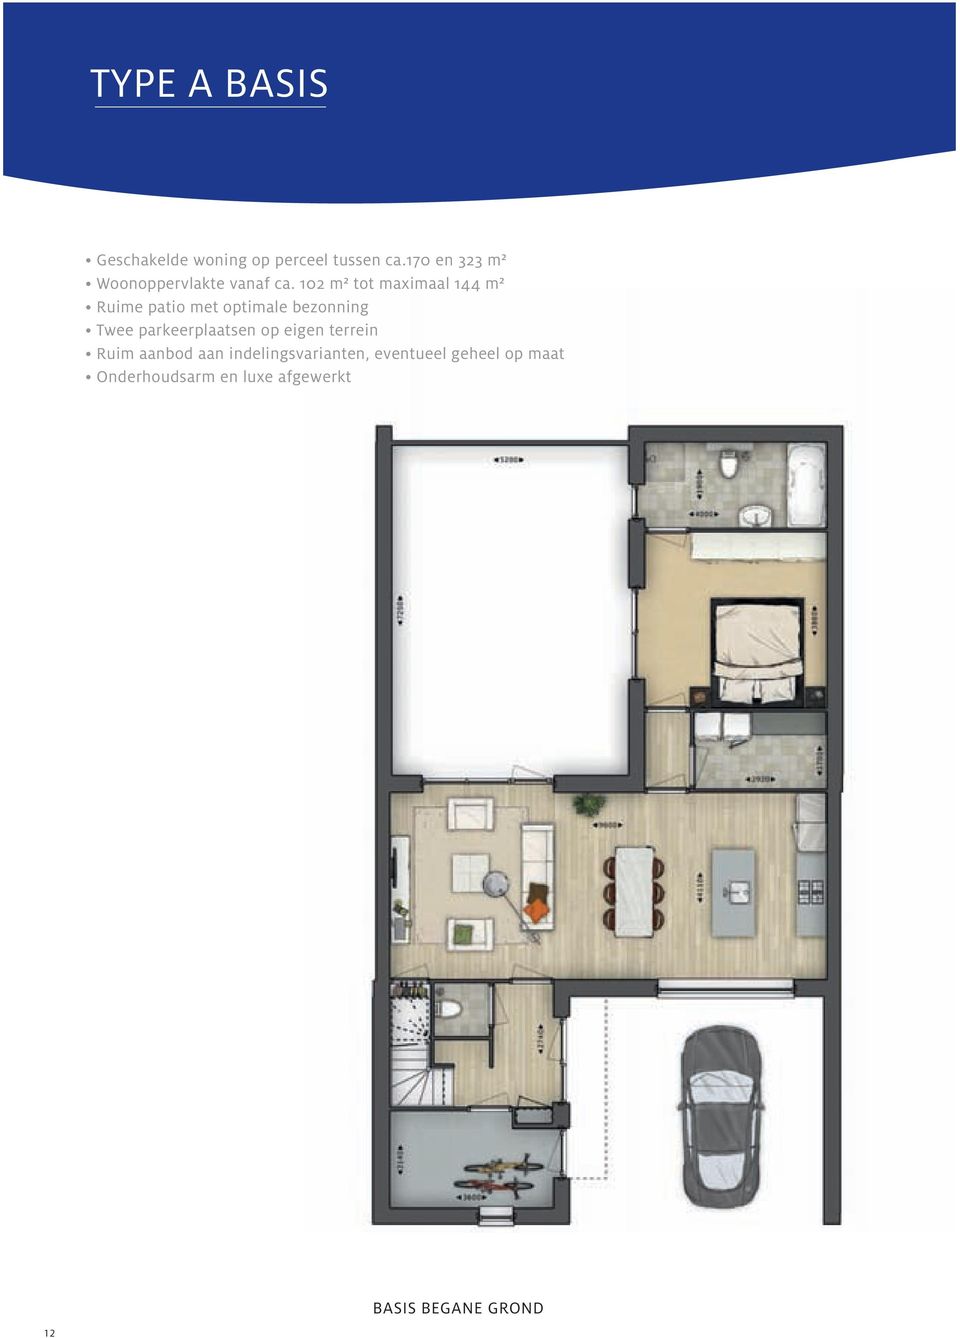 102 m² tot maximaal 144 m² Ruime patio met optimale bezonning Twee